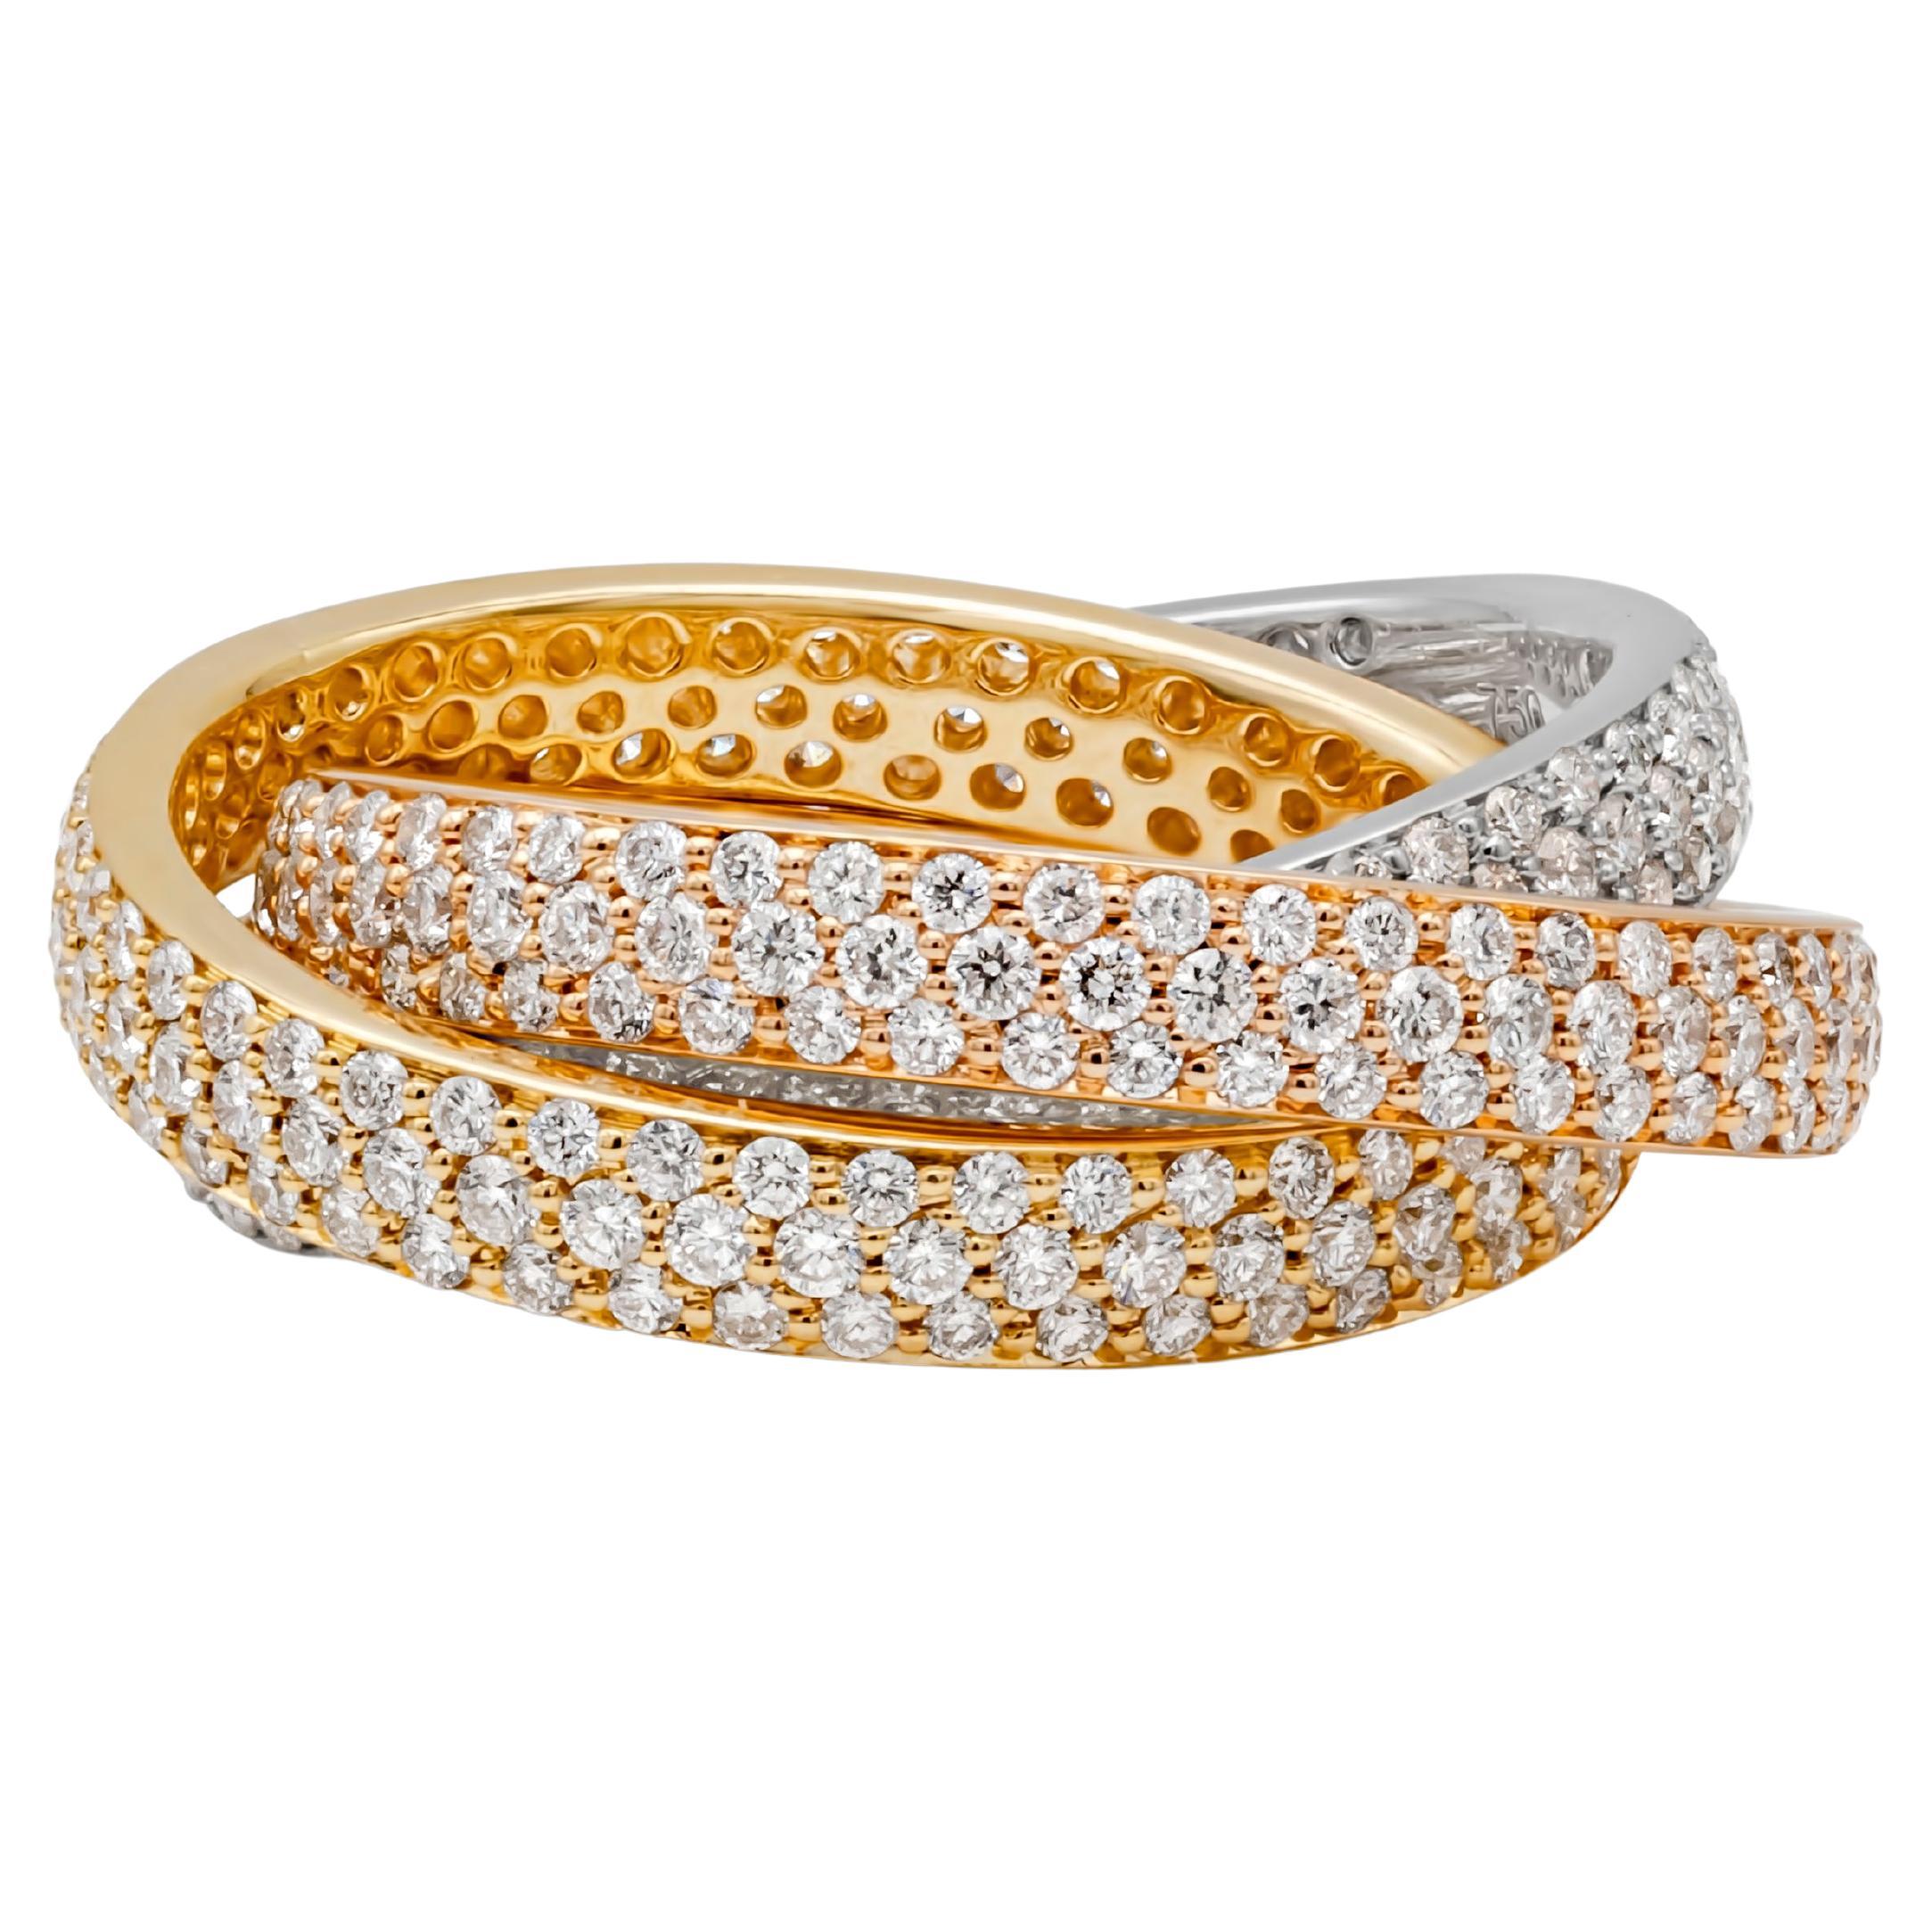 Diese wunderschöne und atemberaubende Unendlichkeit Rolling Fashion Ring verfügt über 18k Weißgold, Gelbgold und Roségold Pave Ewigkeit Bands ineinander und akzentuiert mit 414 Brillanten im Rundschliff mit einem Gesamtgewicht von 3,10 Karat, F-G